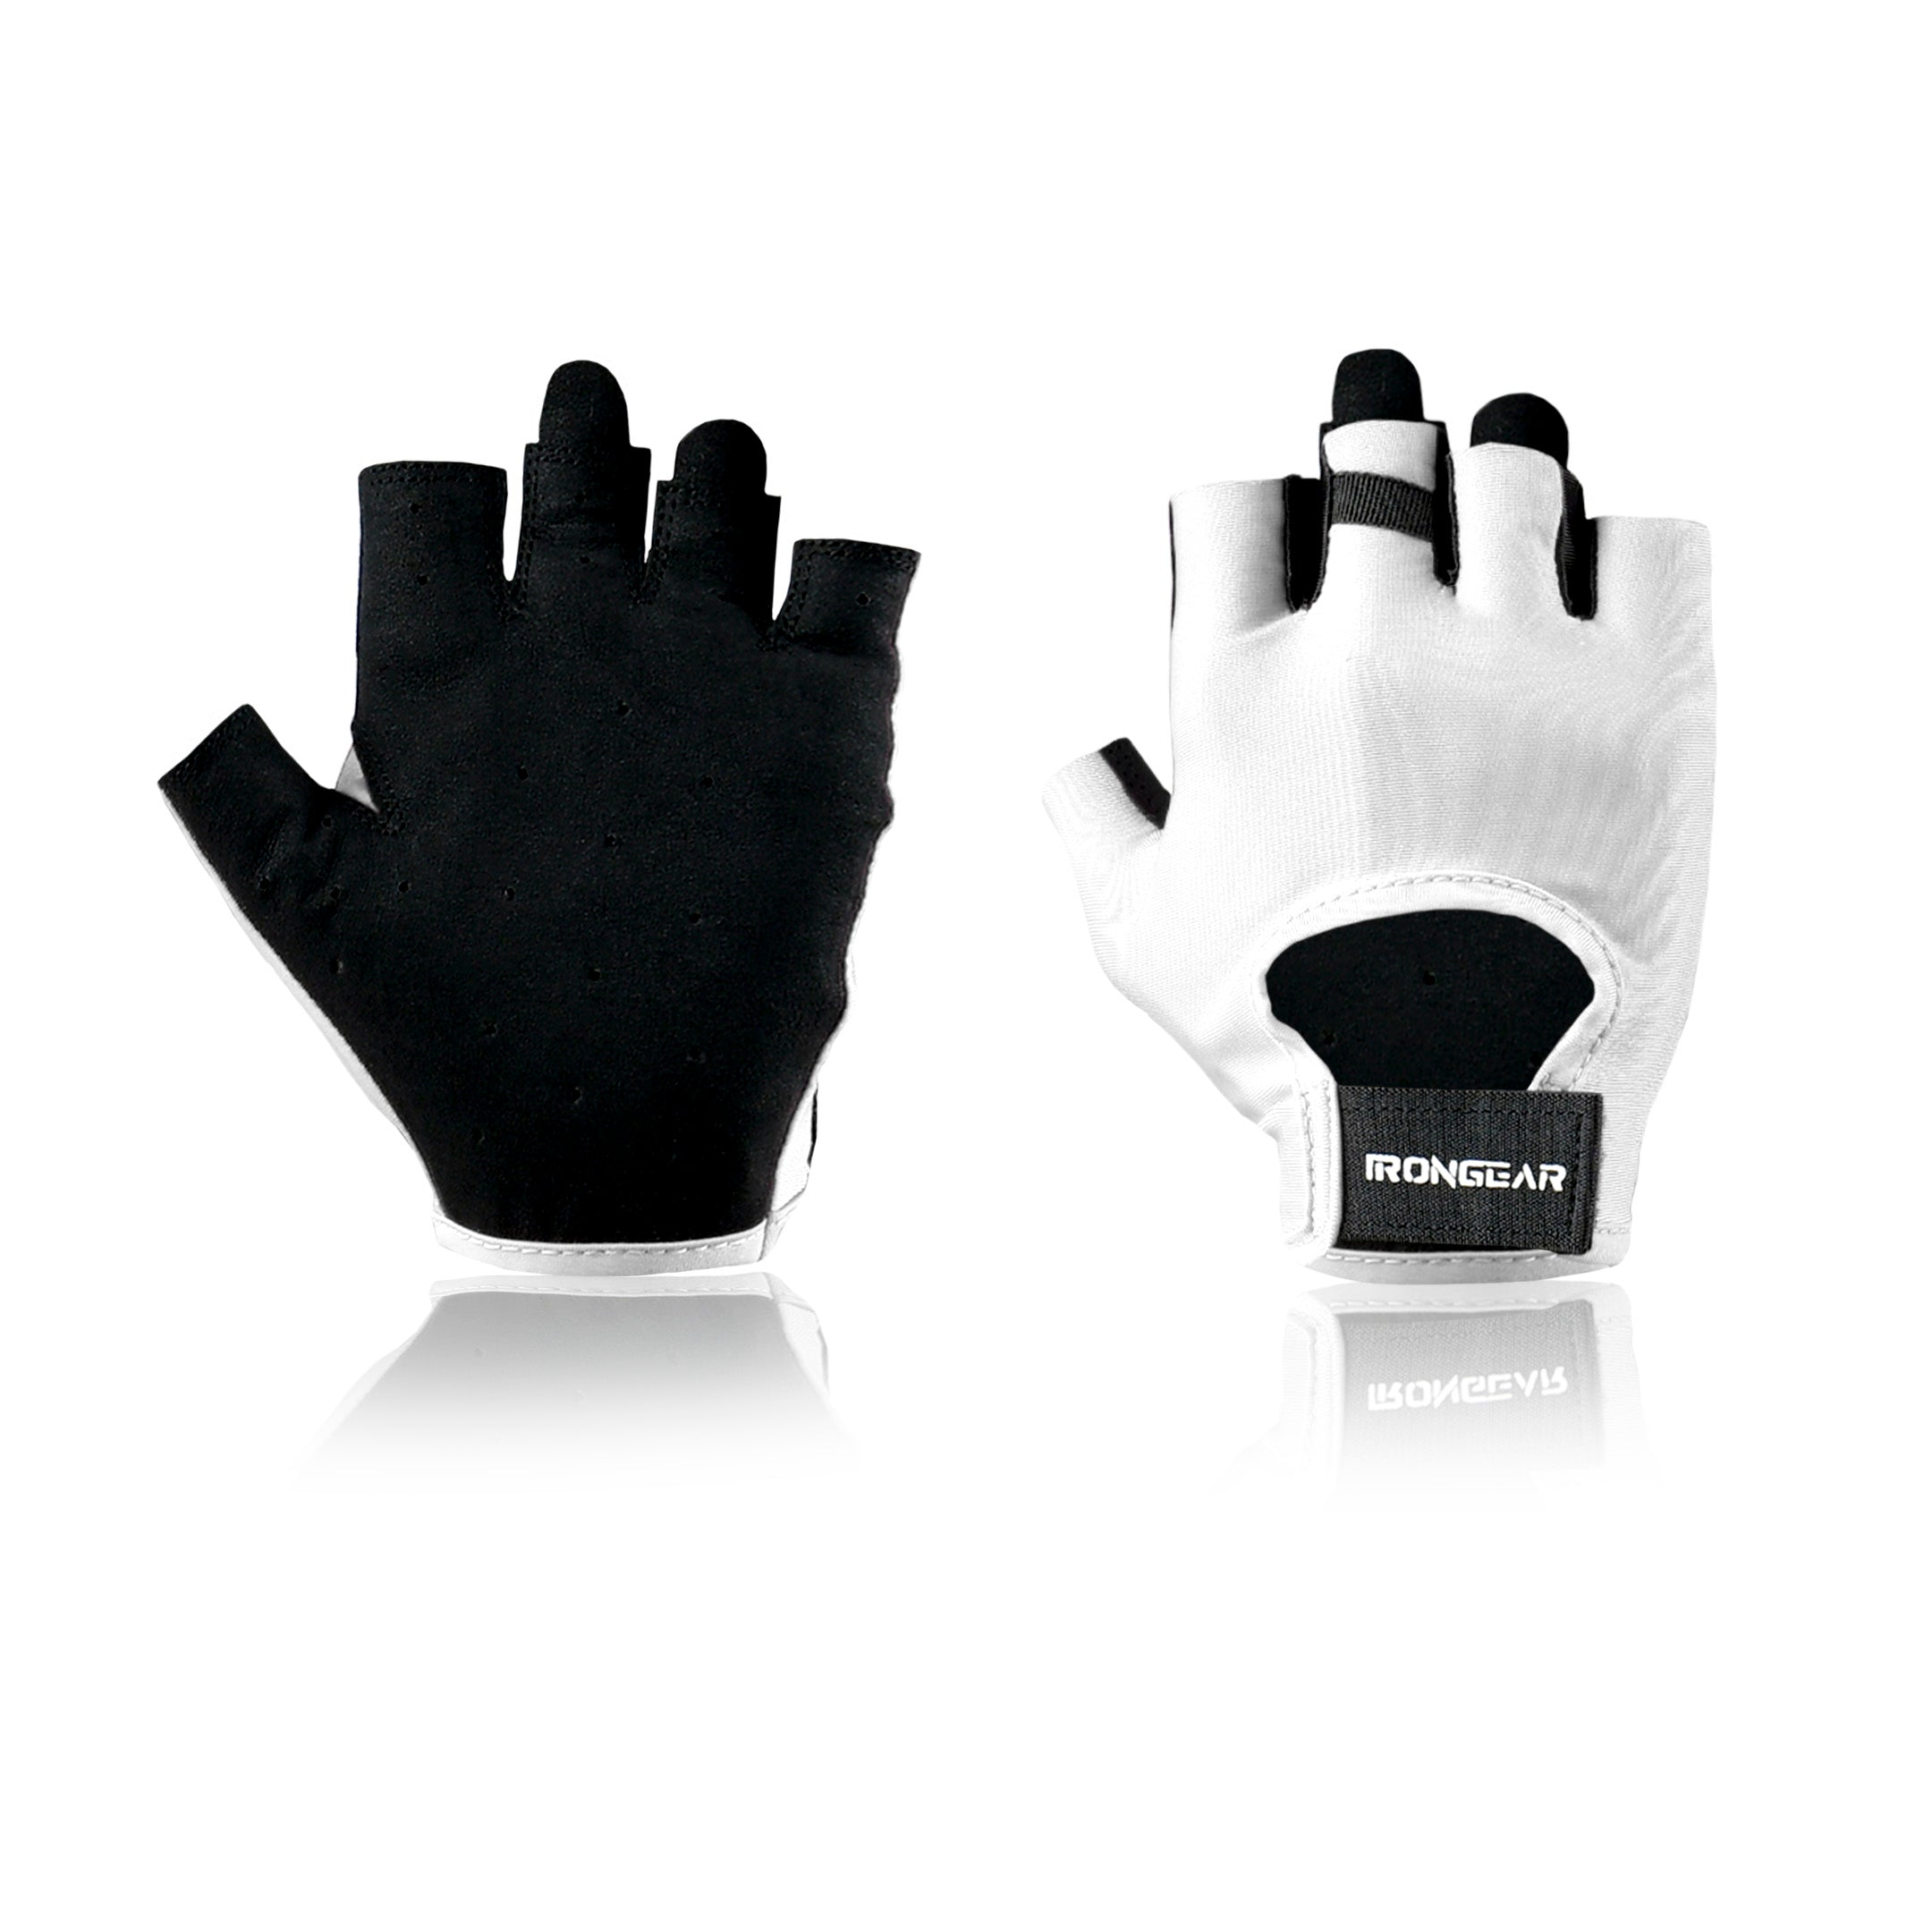 Agility Gloves